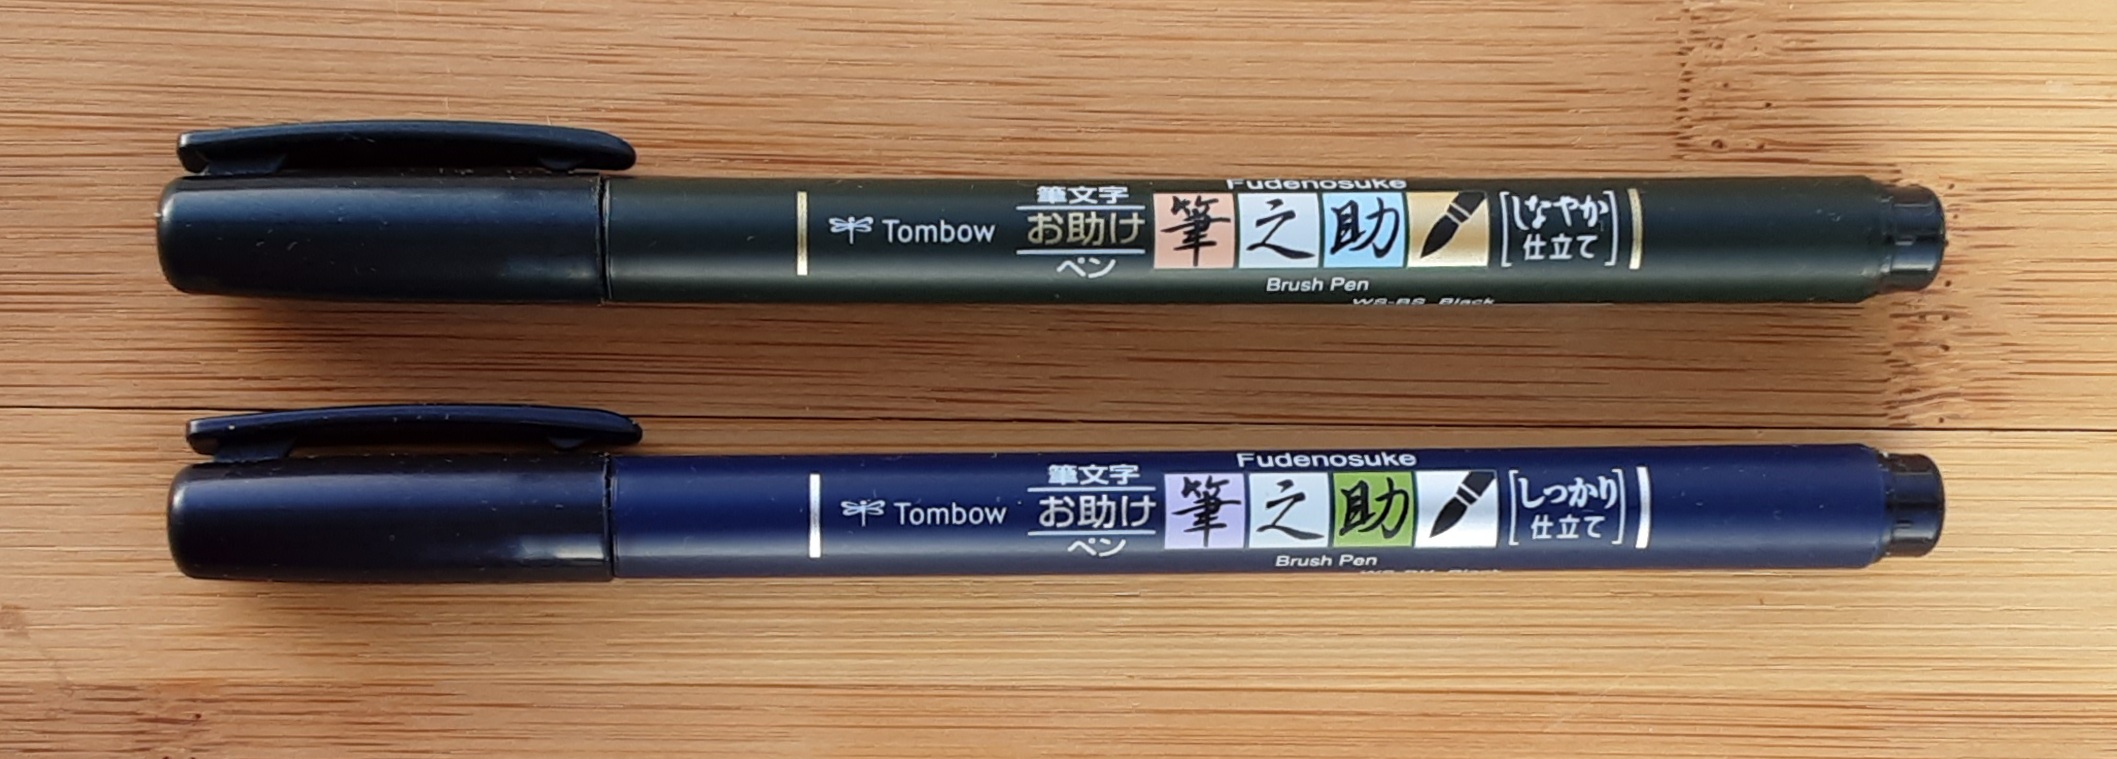 Tombow Fudenosuke Brush Pens – Margret puts pen to paper